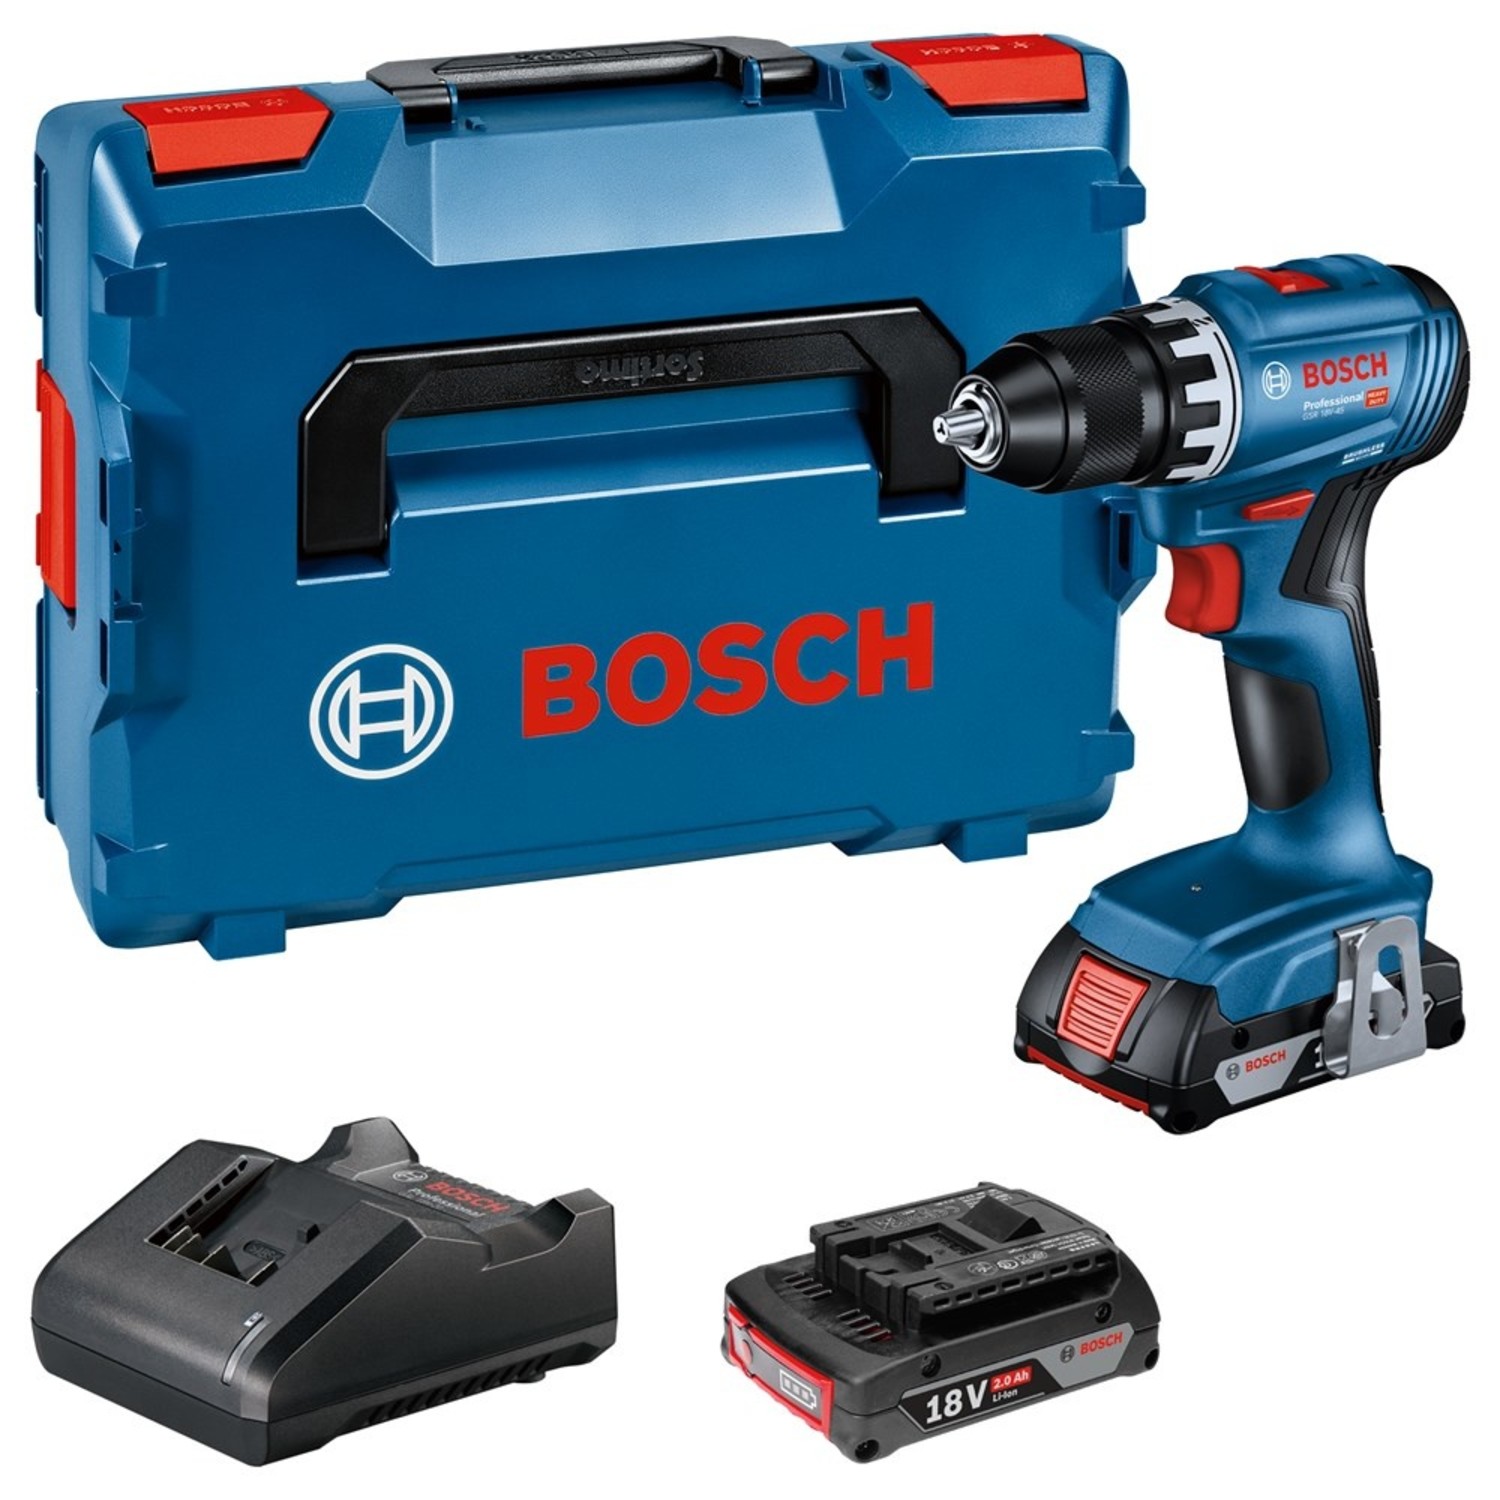 Bosch GSR 18V-45 Accu schroefboormachine + 2x 2,0 Ah 06019K3203 kopen? Toolsvoordelig.nl - Toolsvoordelig.nl